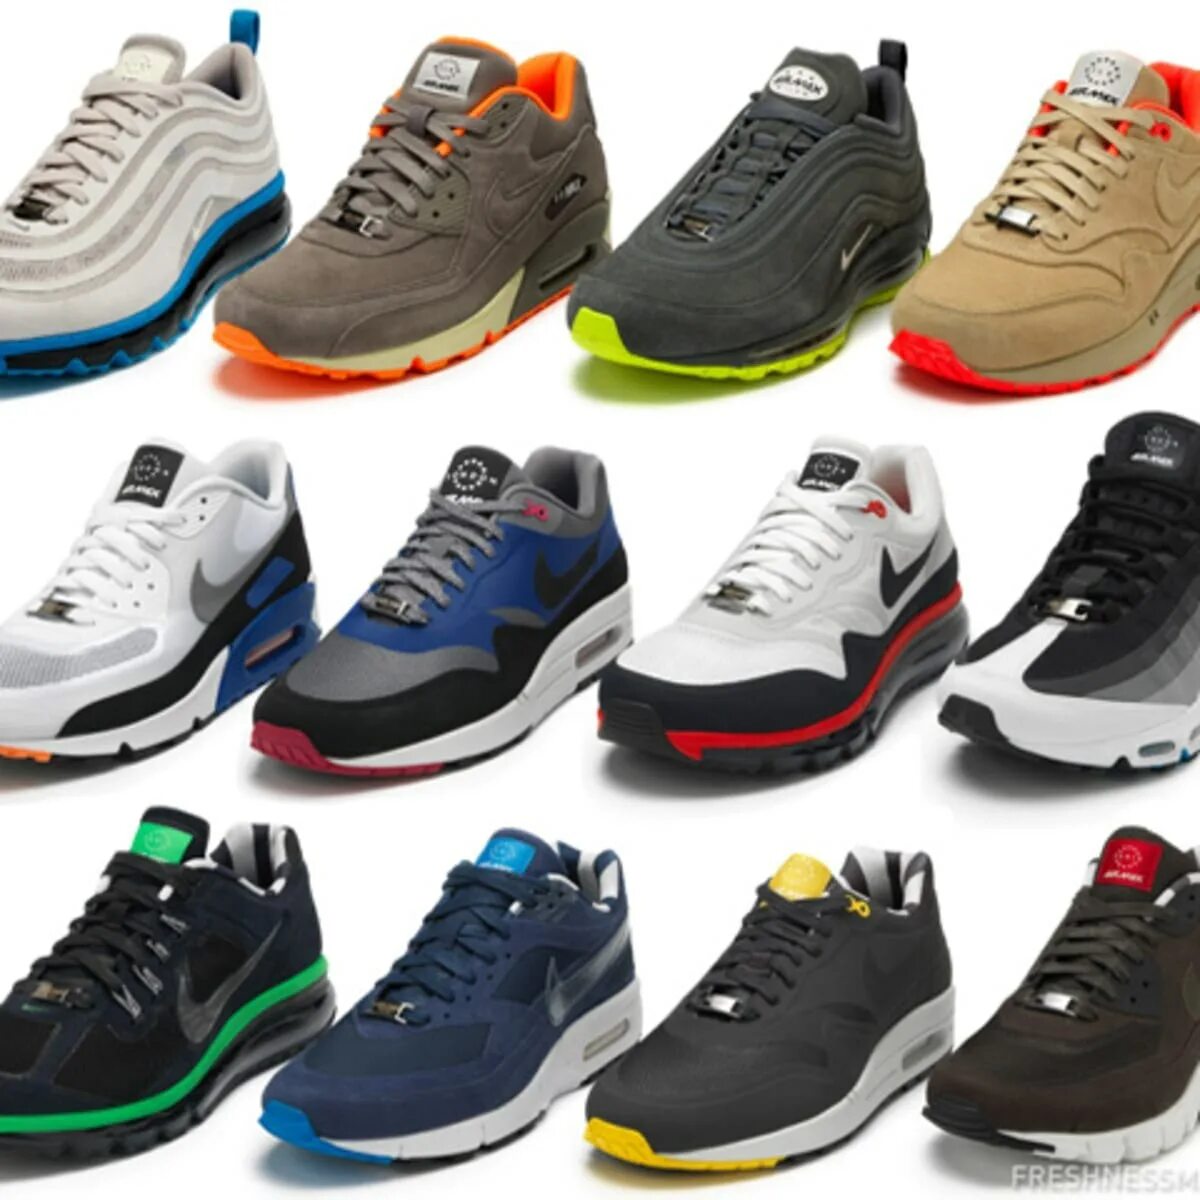 Лучшая качественная обувь. Обувь и красофка мужское 2022. Nike Air Max коллекция 2022г. Обувь мужская найк Эйр. Кроссовки мужские фашион Air.